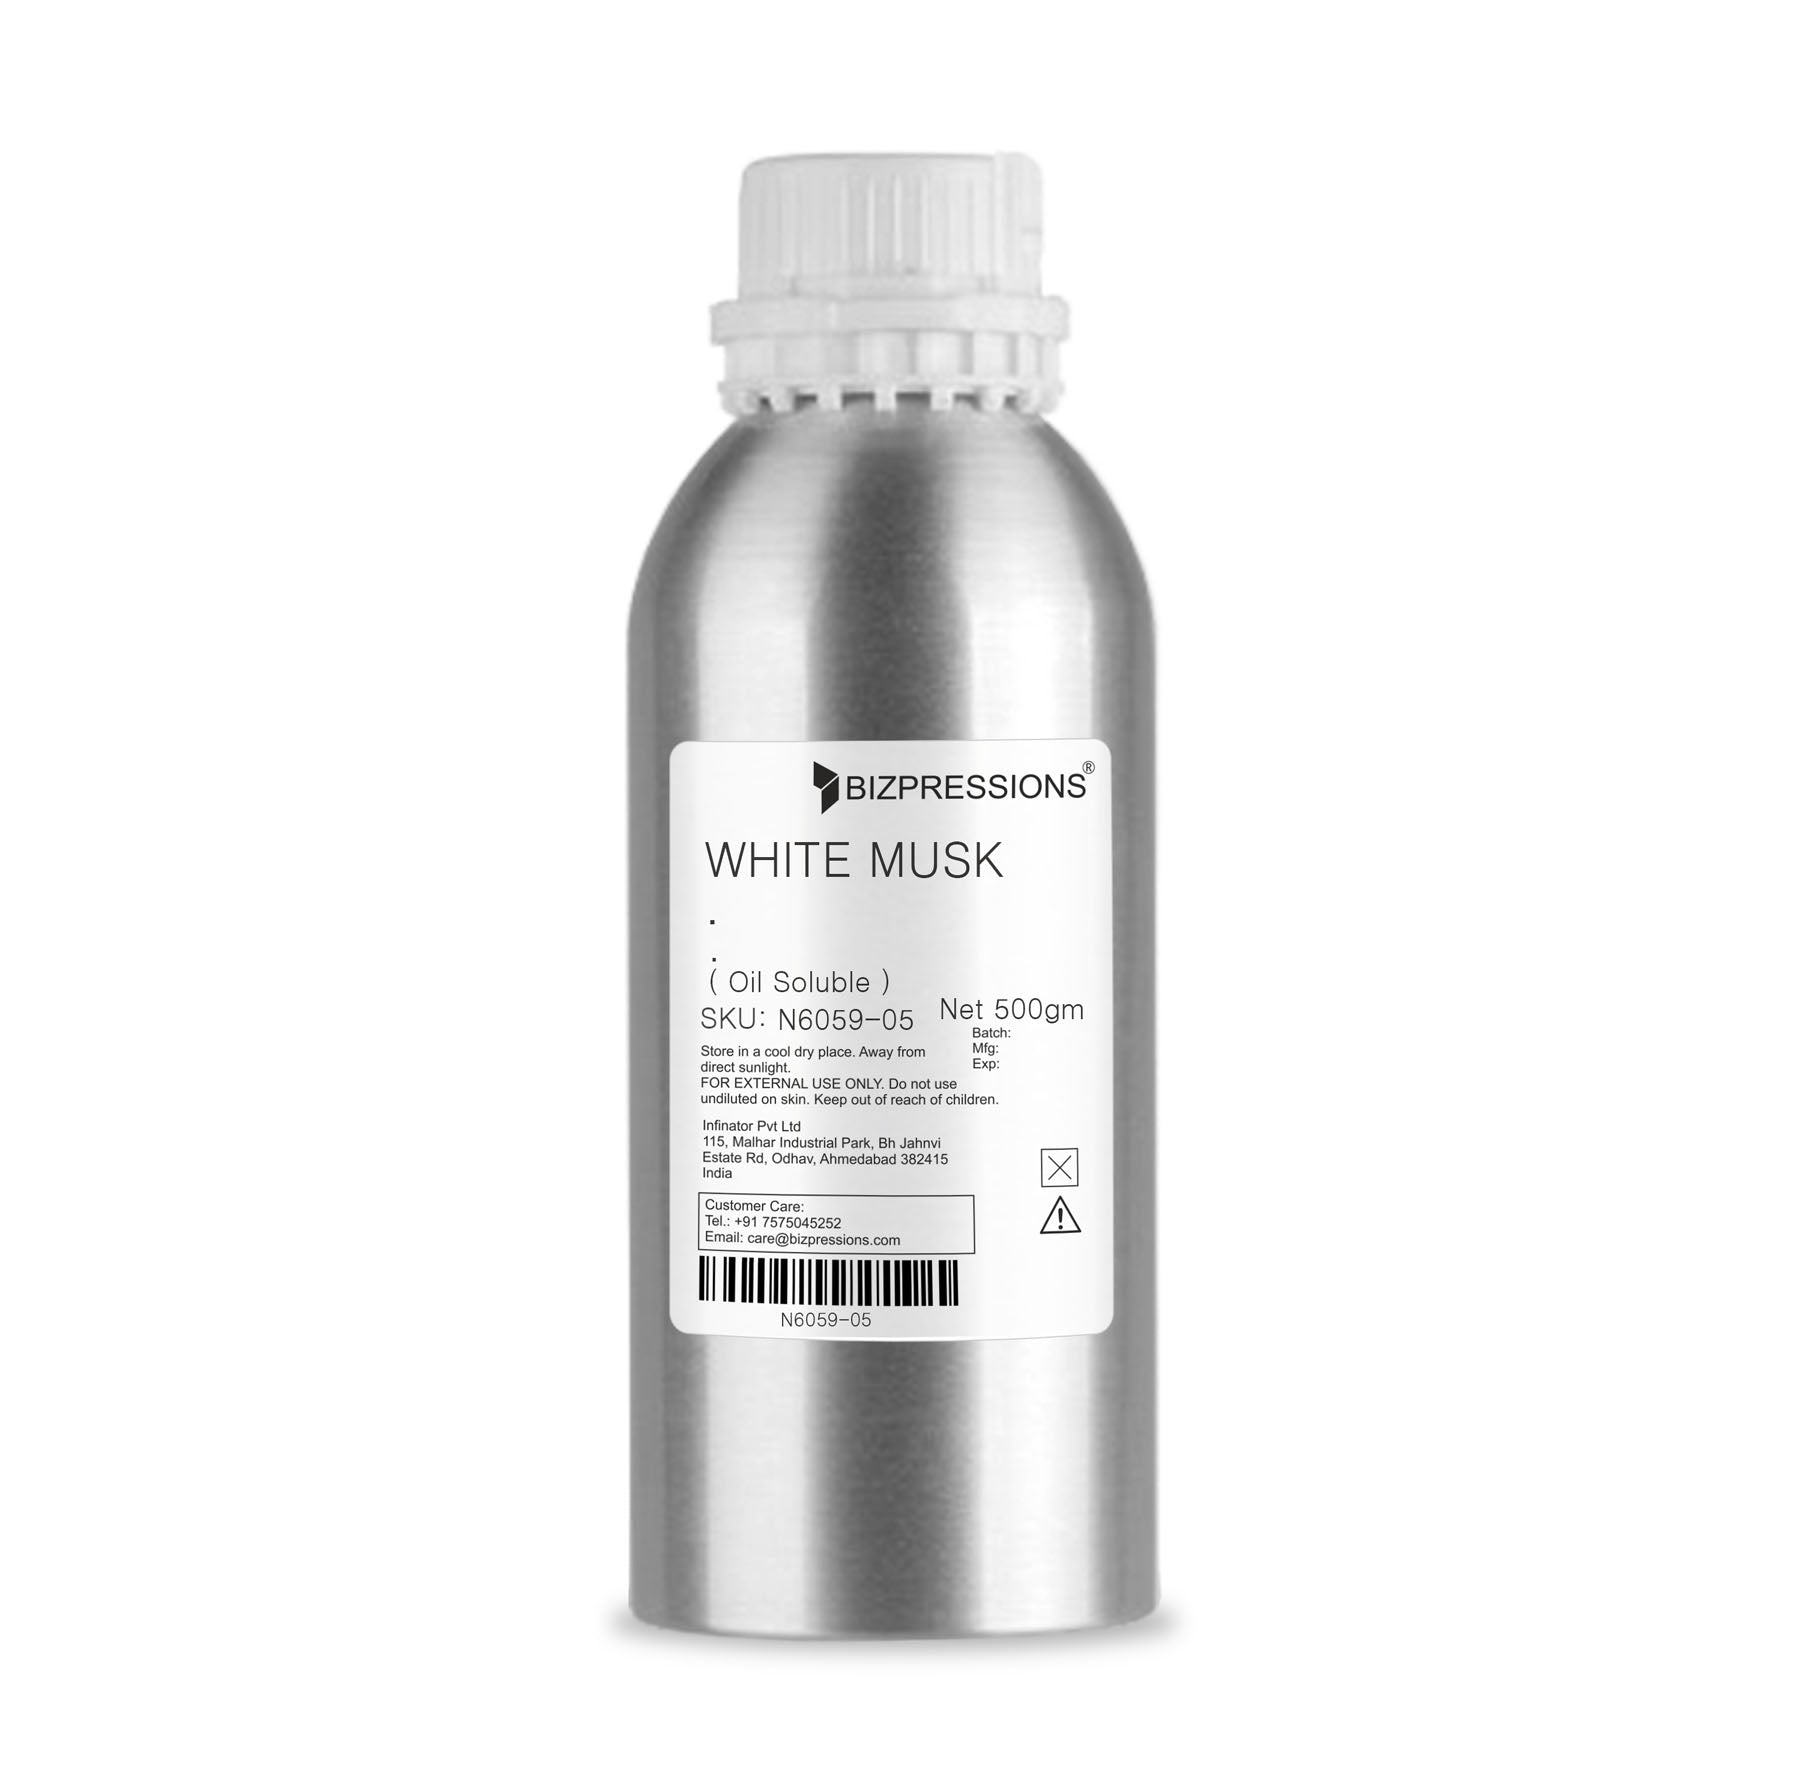 WHITE MUSK - Fragrance ( Oil Soluble ) - 500 gm